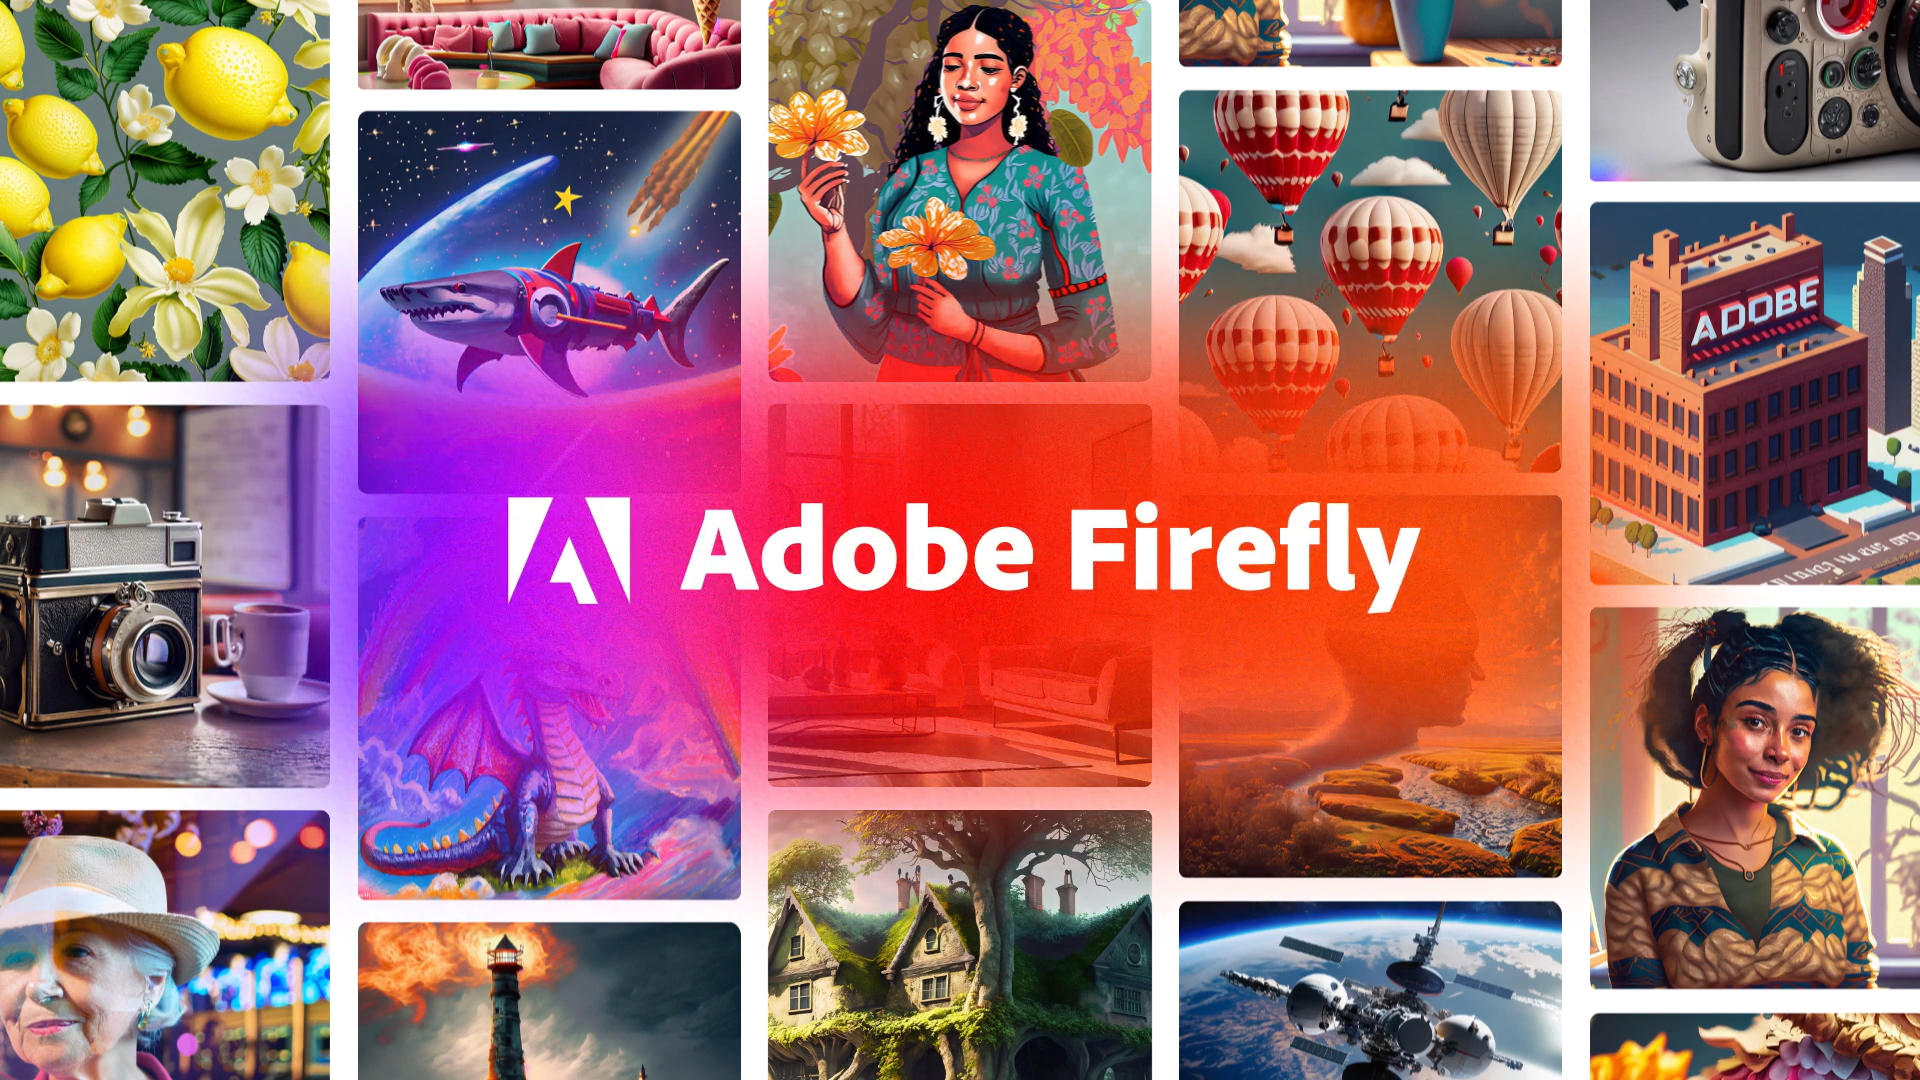 Firefly : Adobe aurait entraîné son IA avec son propre stock d'images, mais pas que...